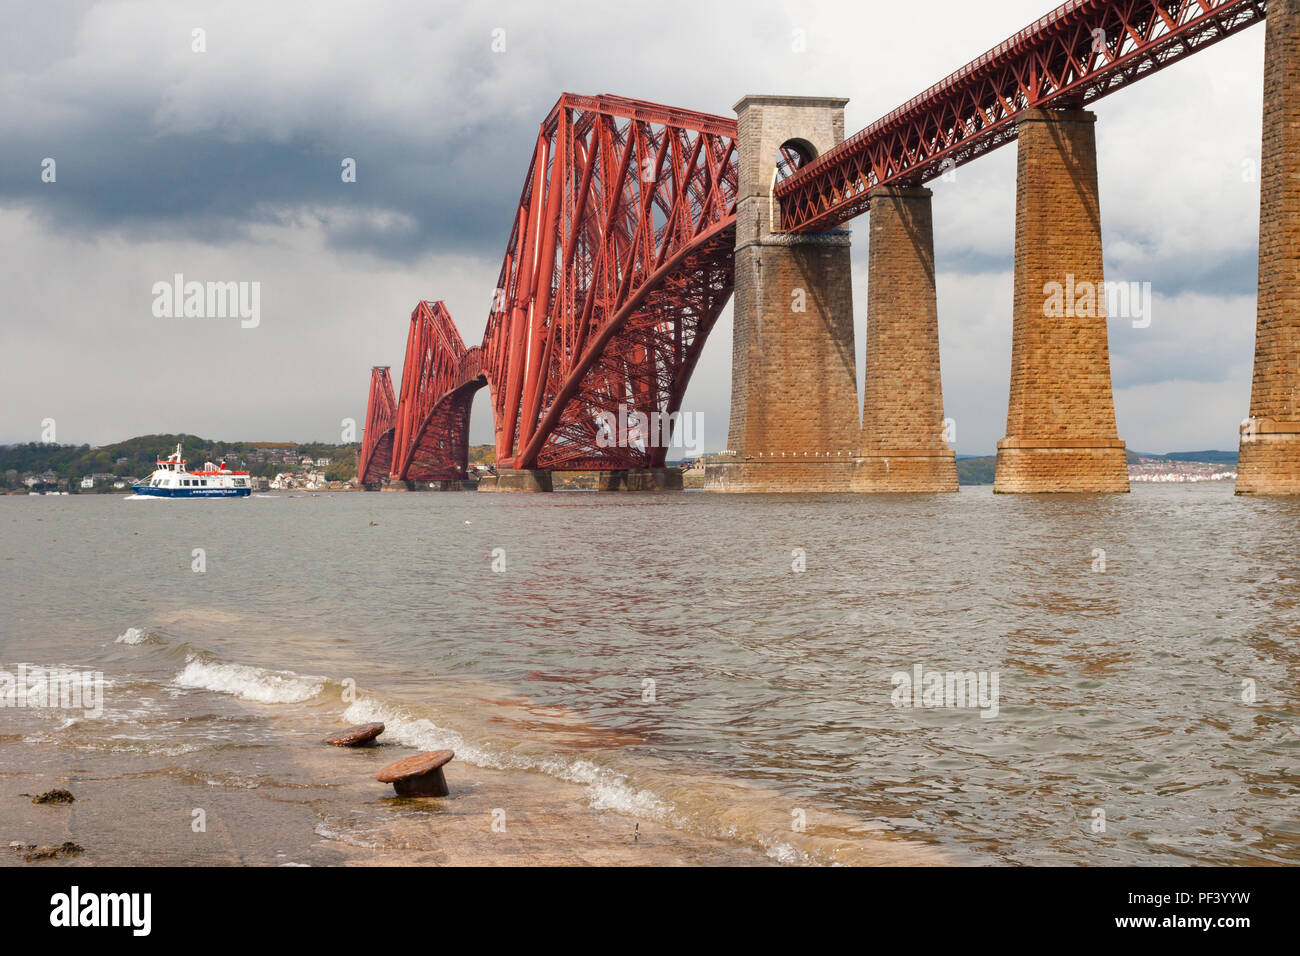 The Forth Rail Bridge in Scotland Stock Photo